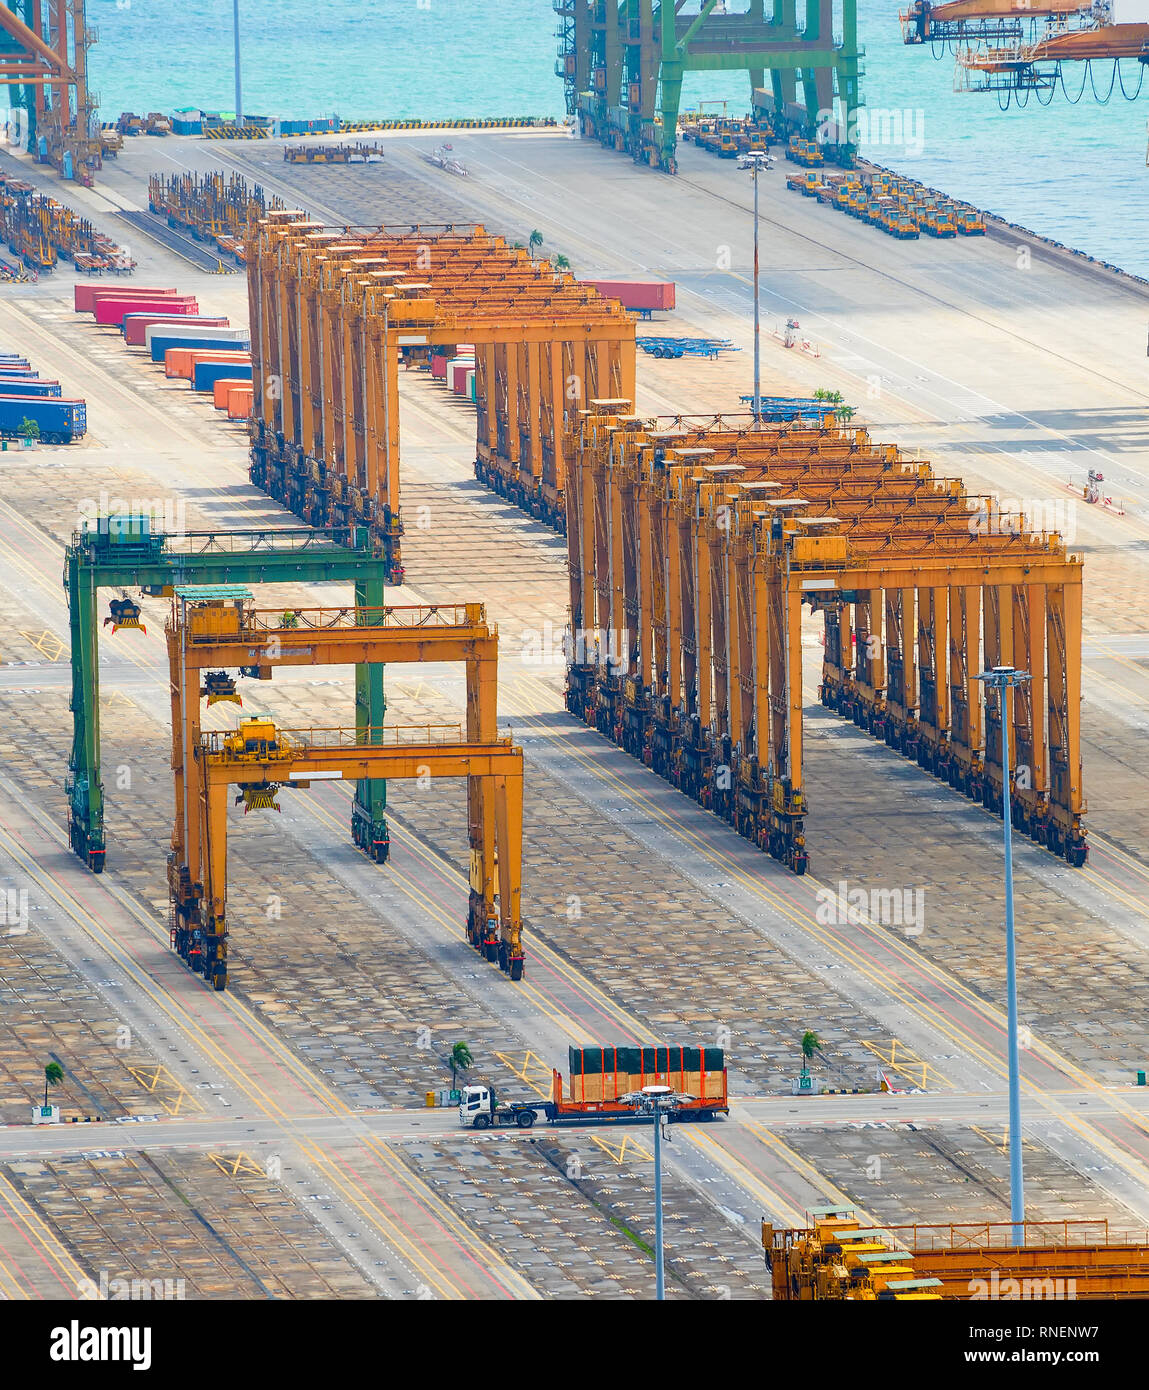 Equipos industriales, grúas de carga y construcciones de acero en el muelle en el puerto de embarque de carga vacía de Singapur, vista aérea Foto de stock